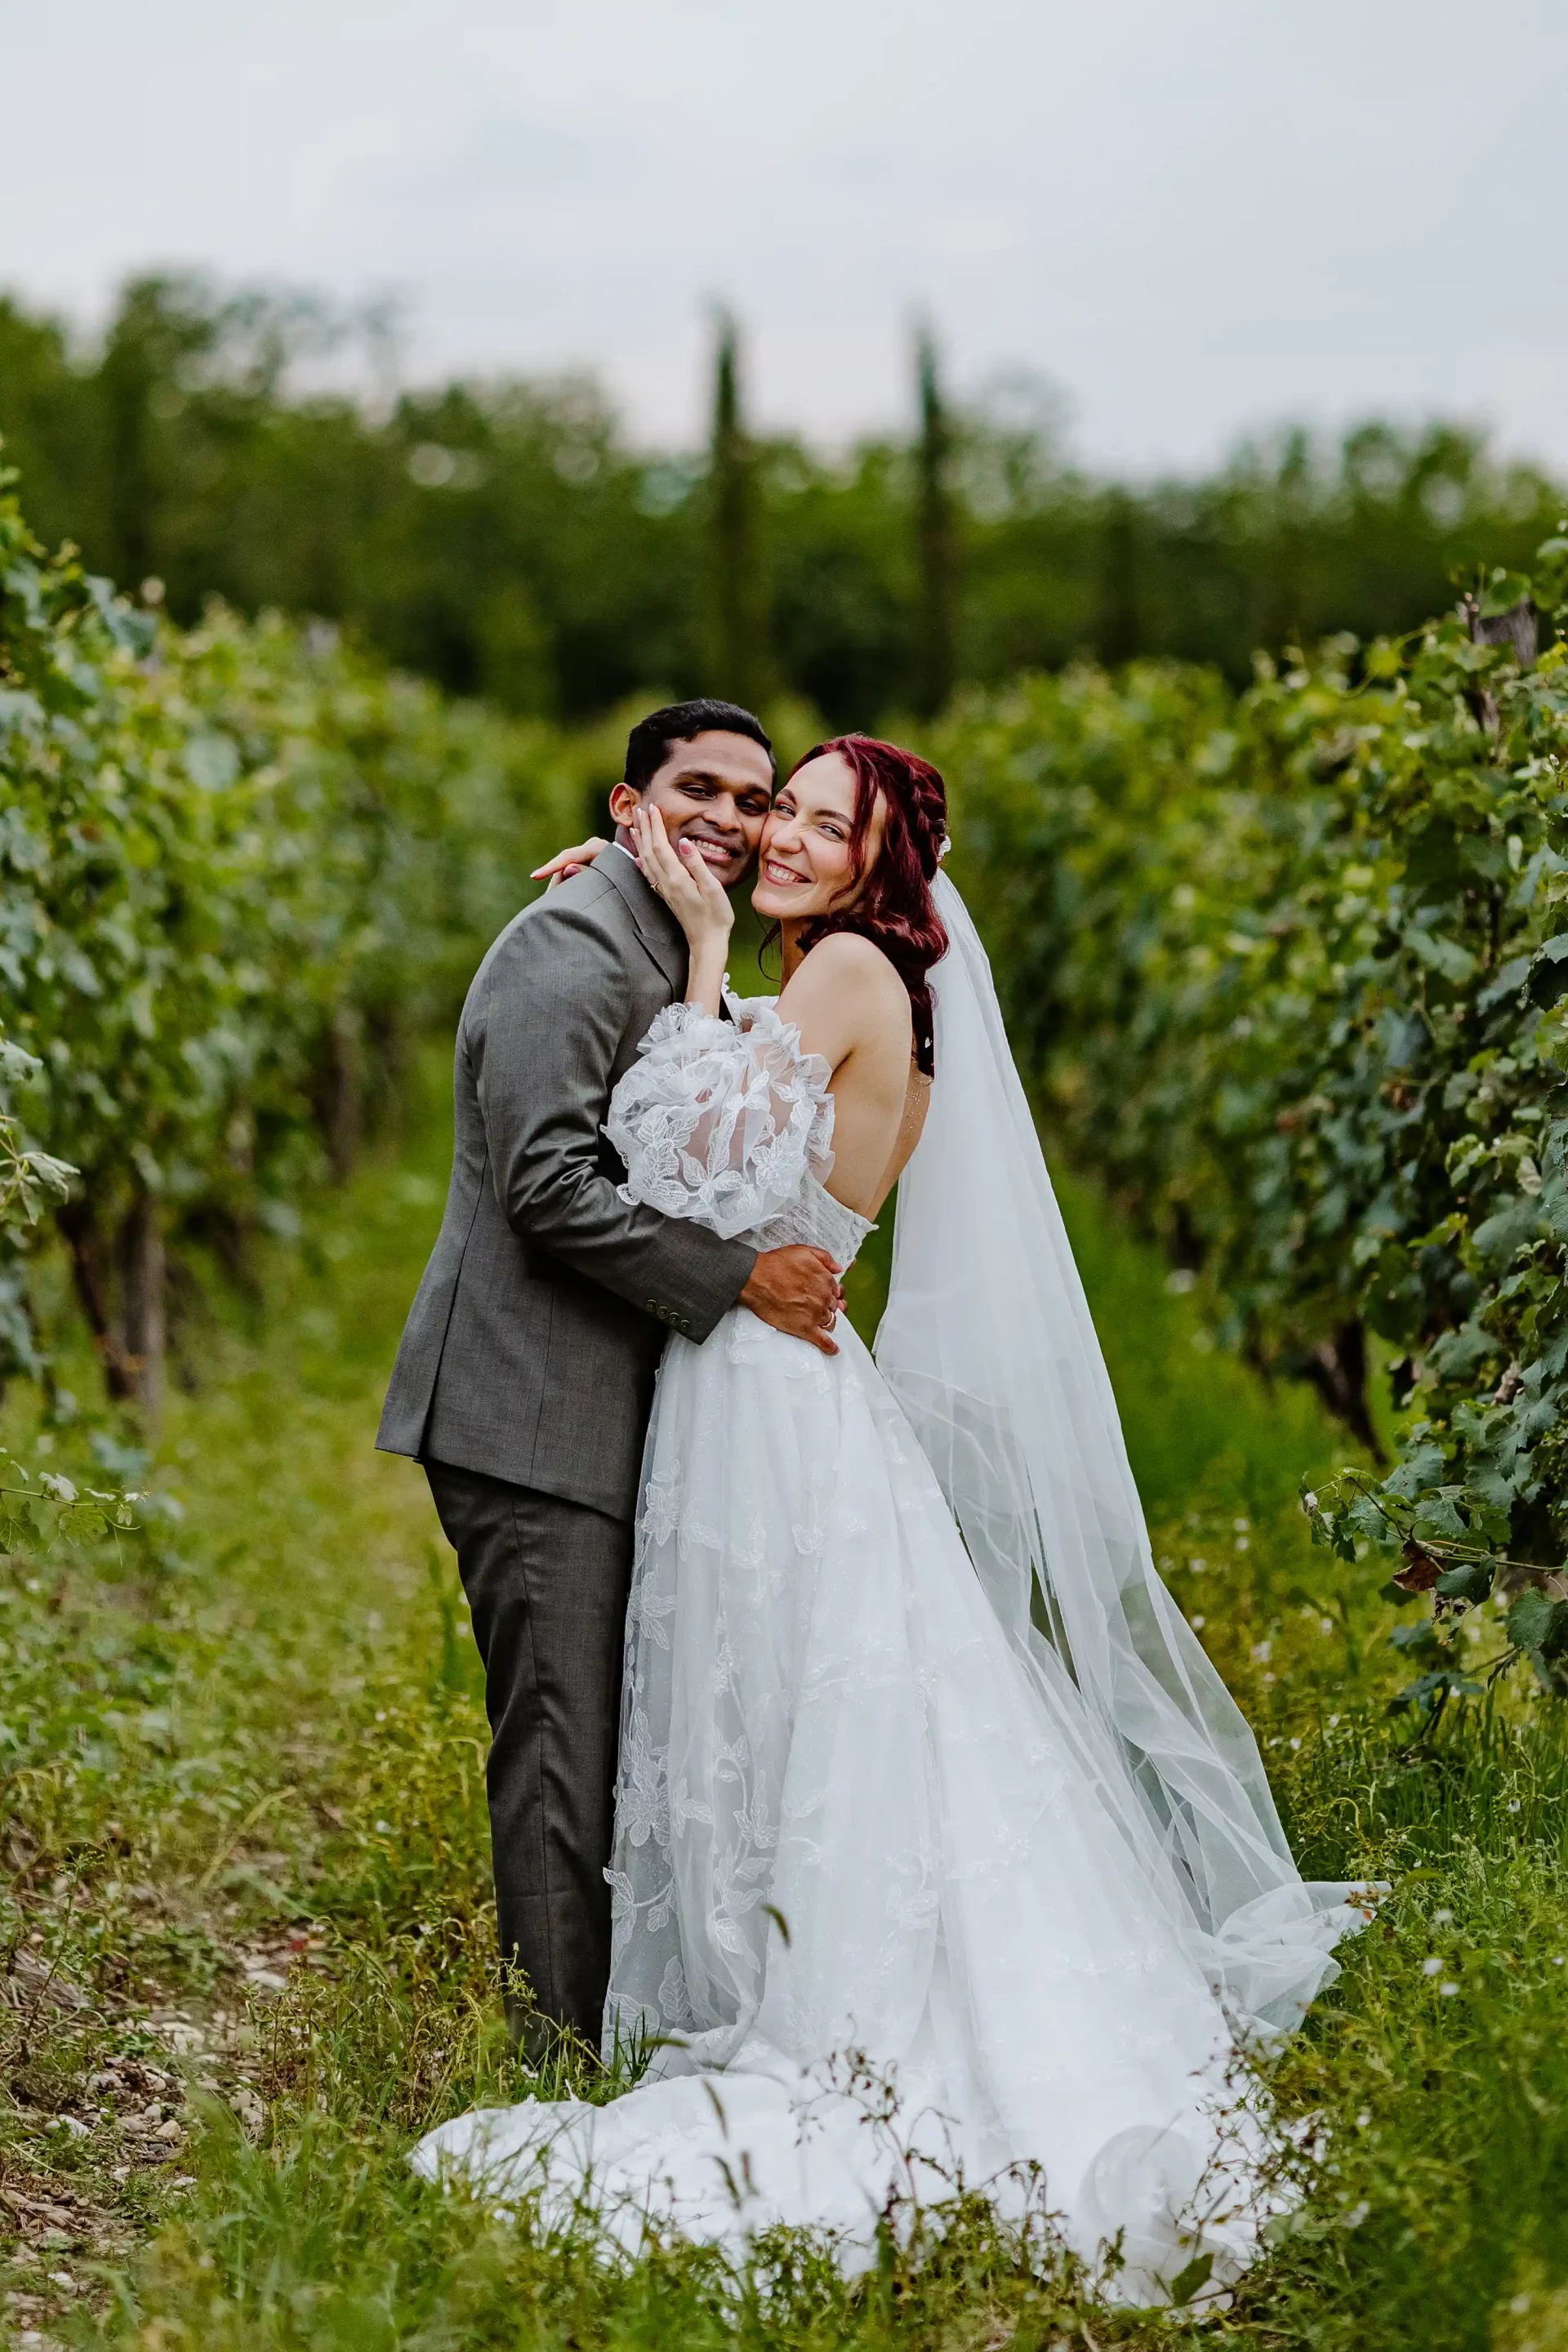 Wedding in vineyards in Georgia